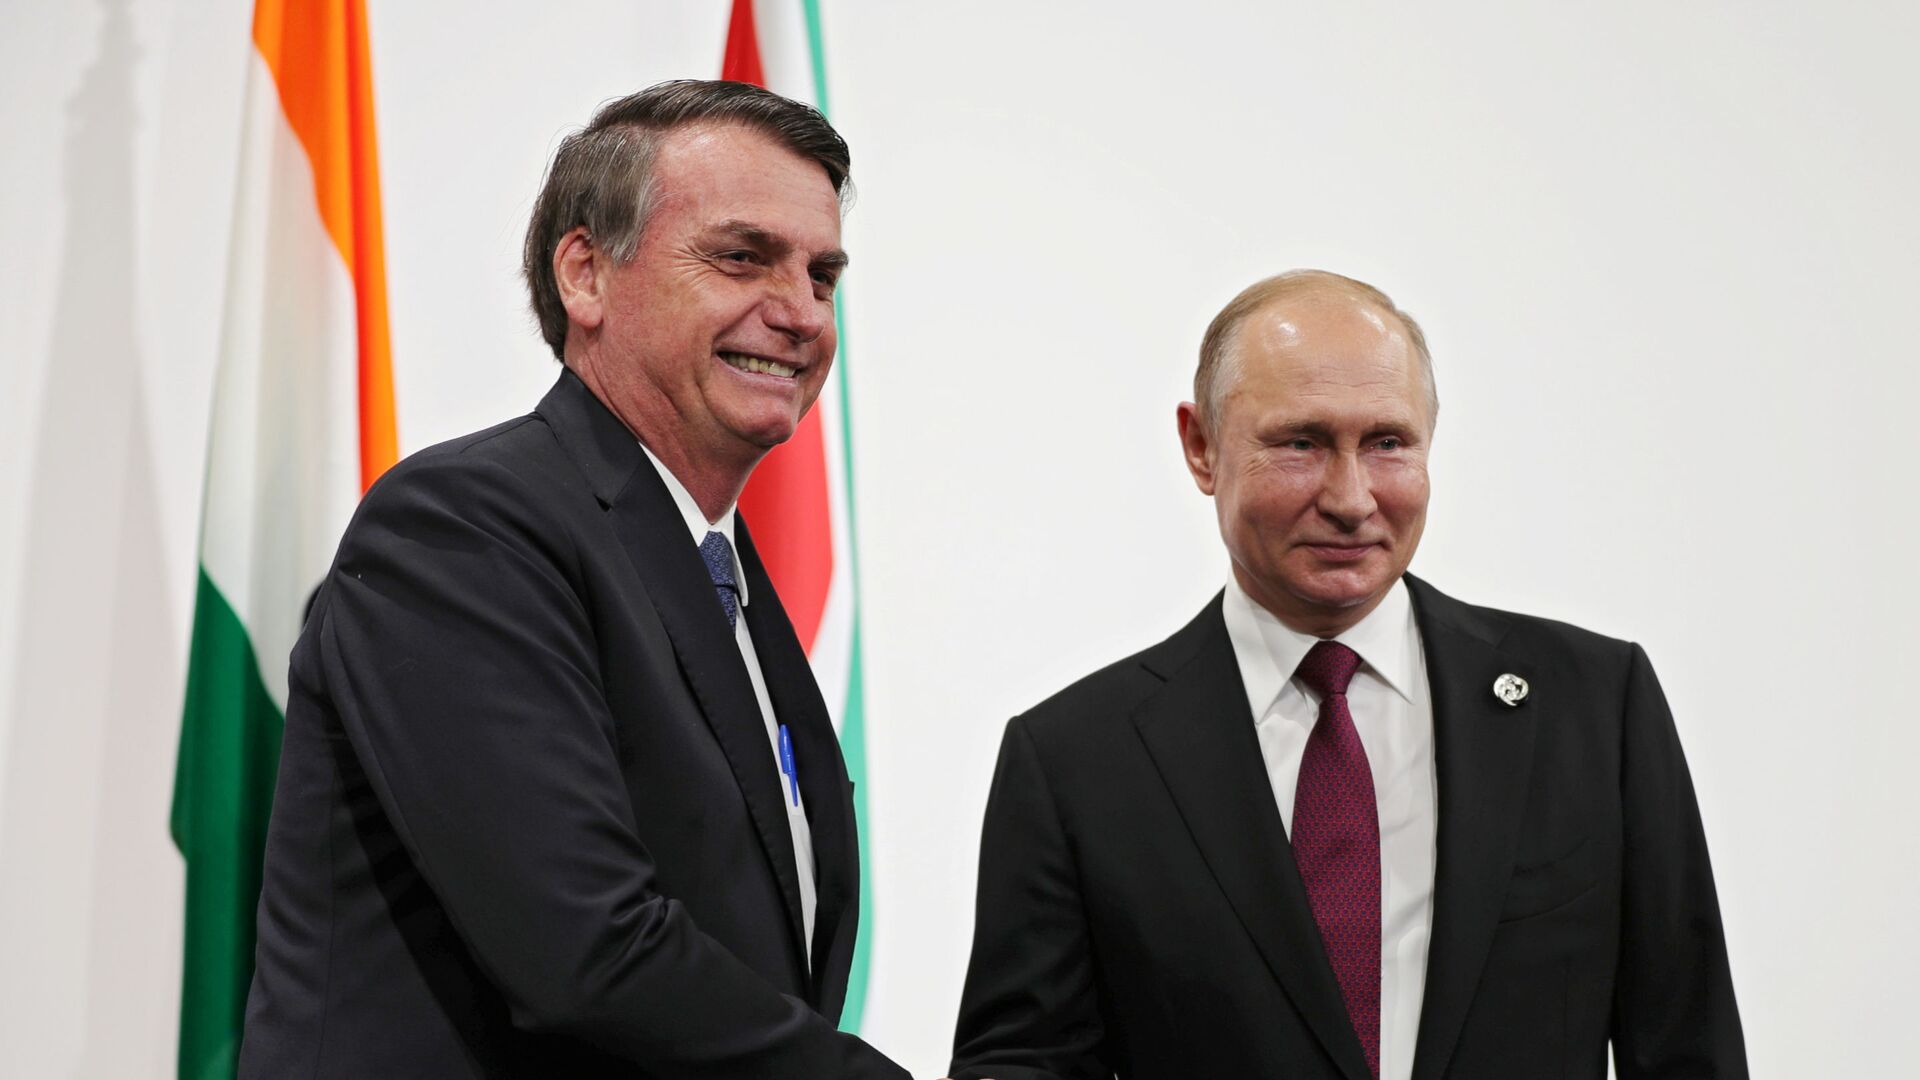 Bolsonaro quer organizar visita de chefes de estado a Putin, diz Turquia